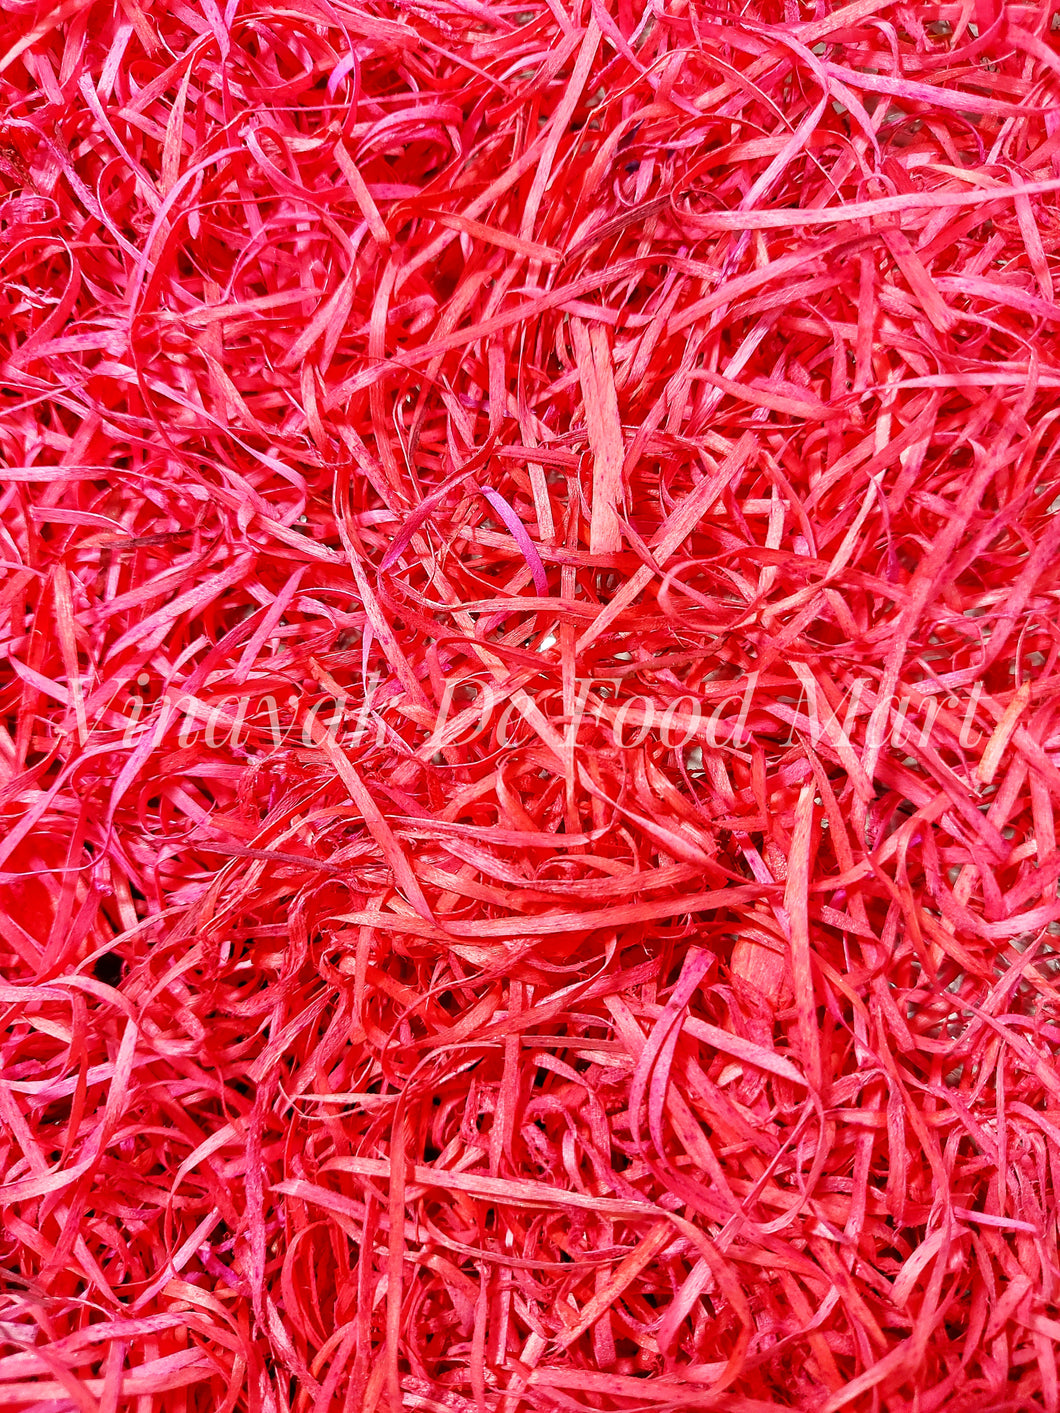 Red Artificial Grass